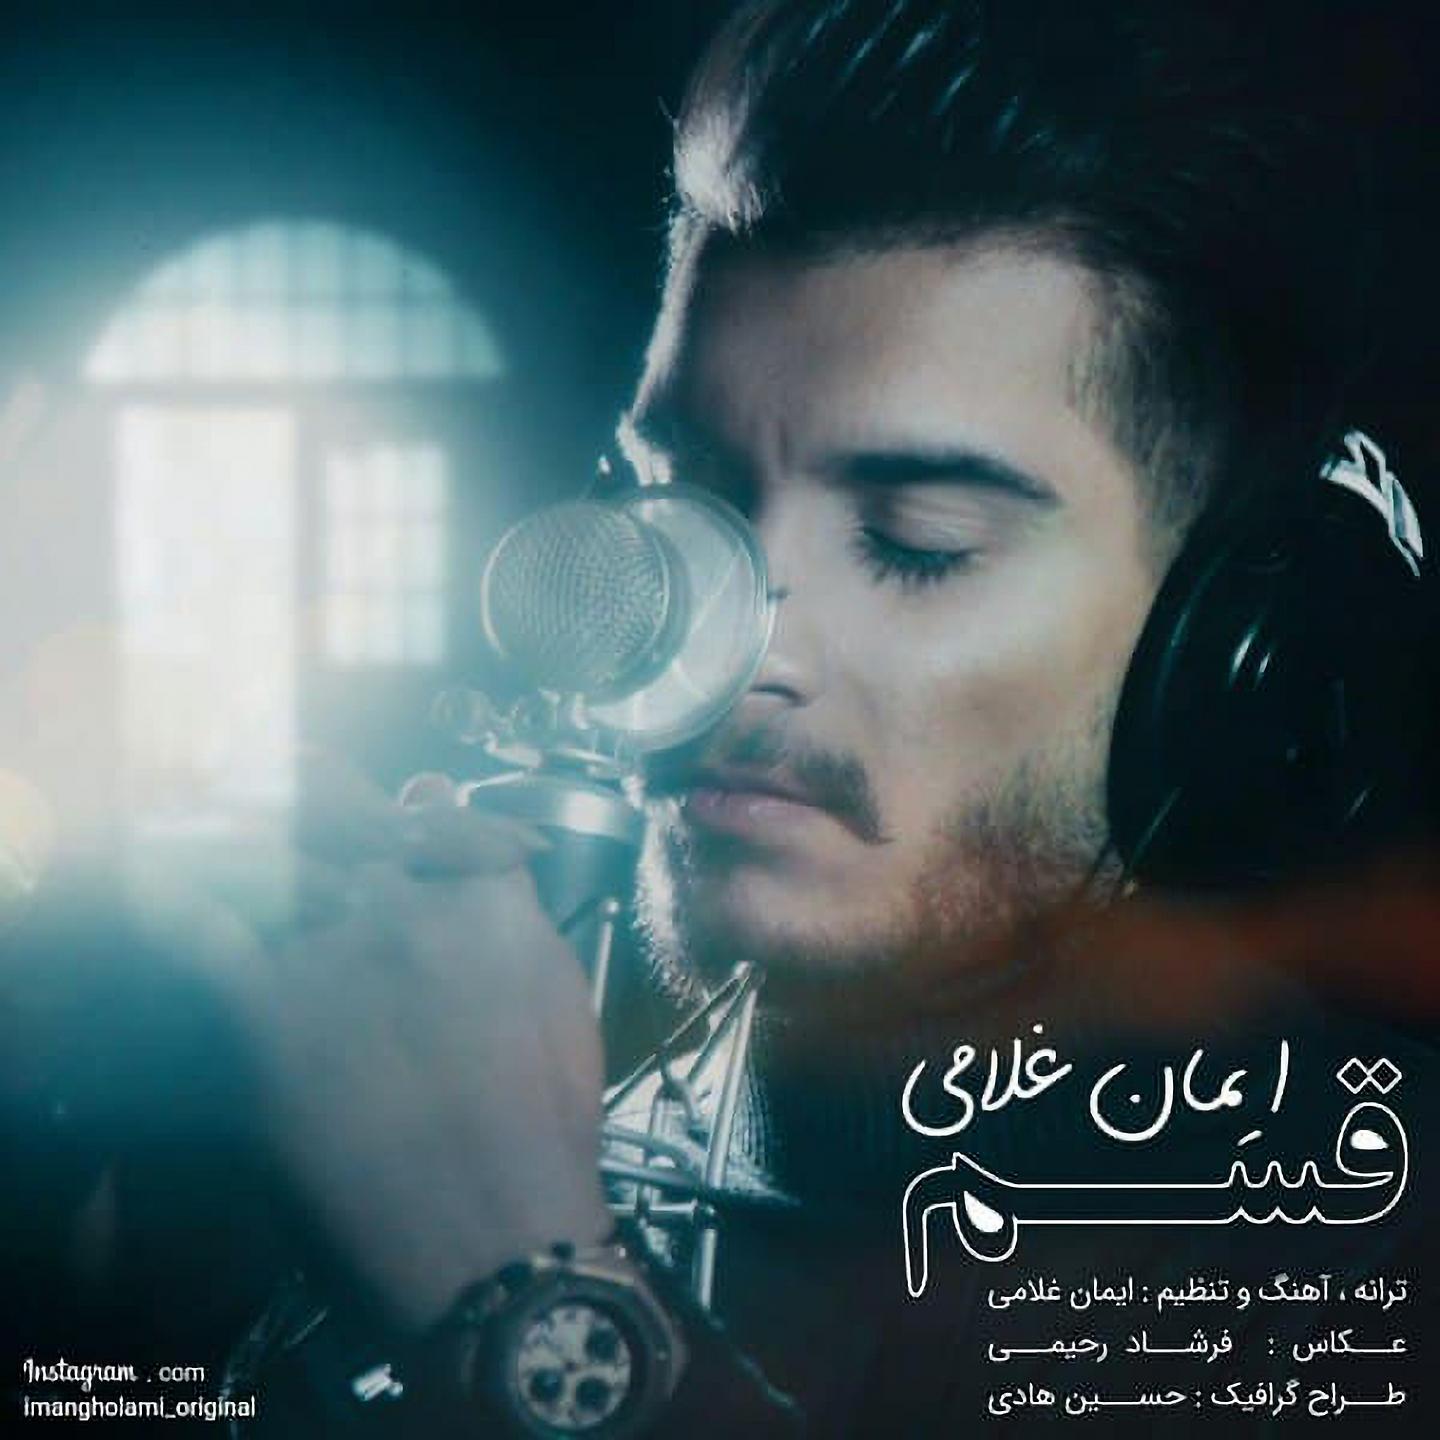 Постер альбома Ghasam